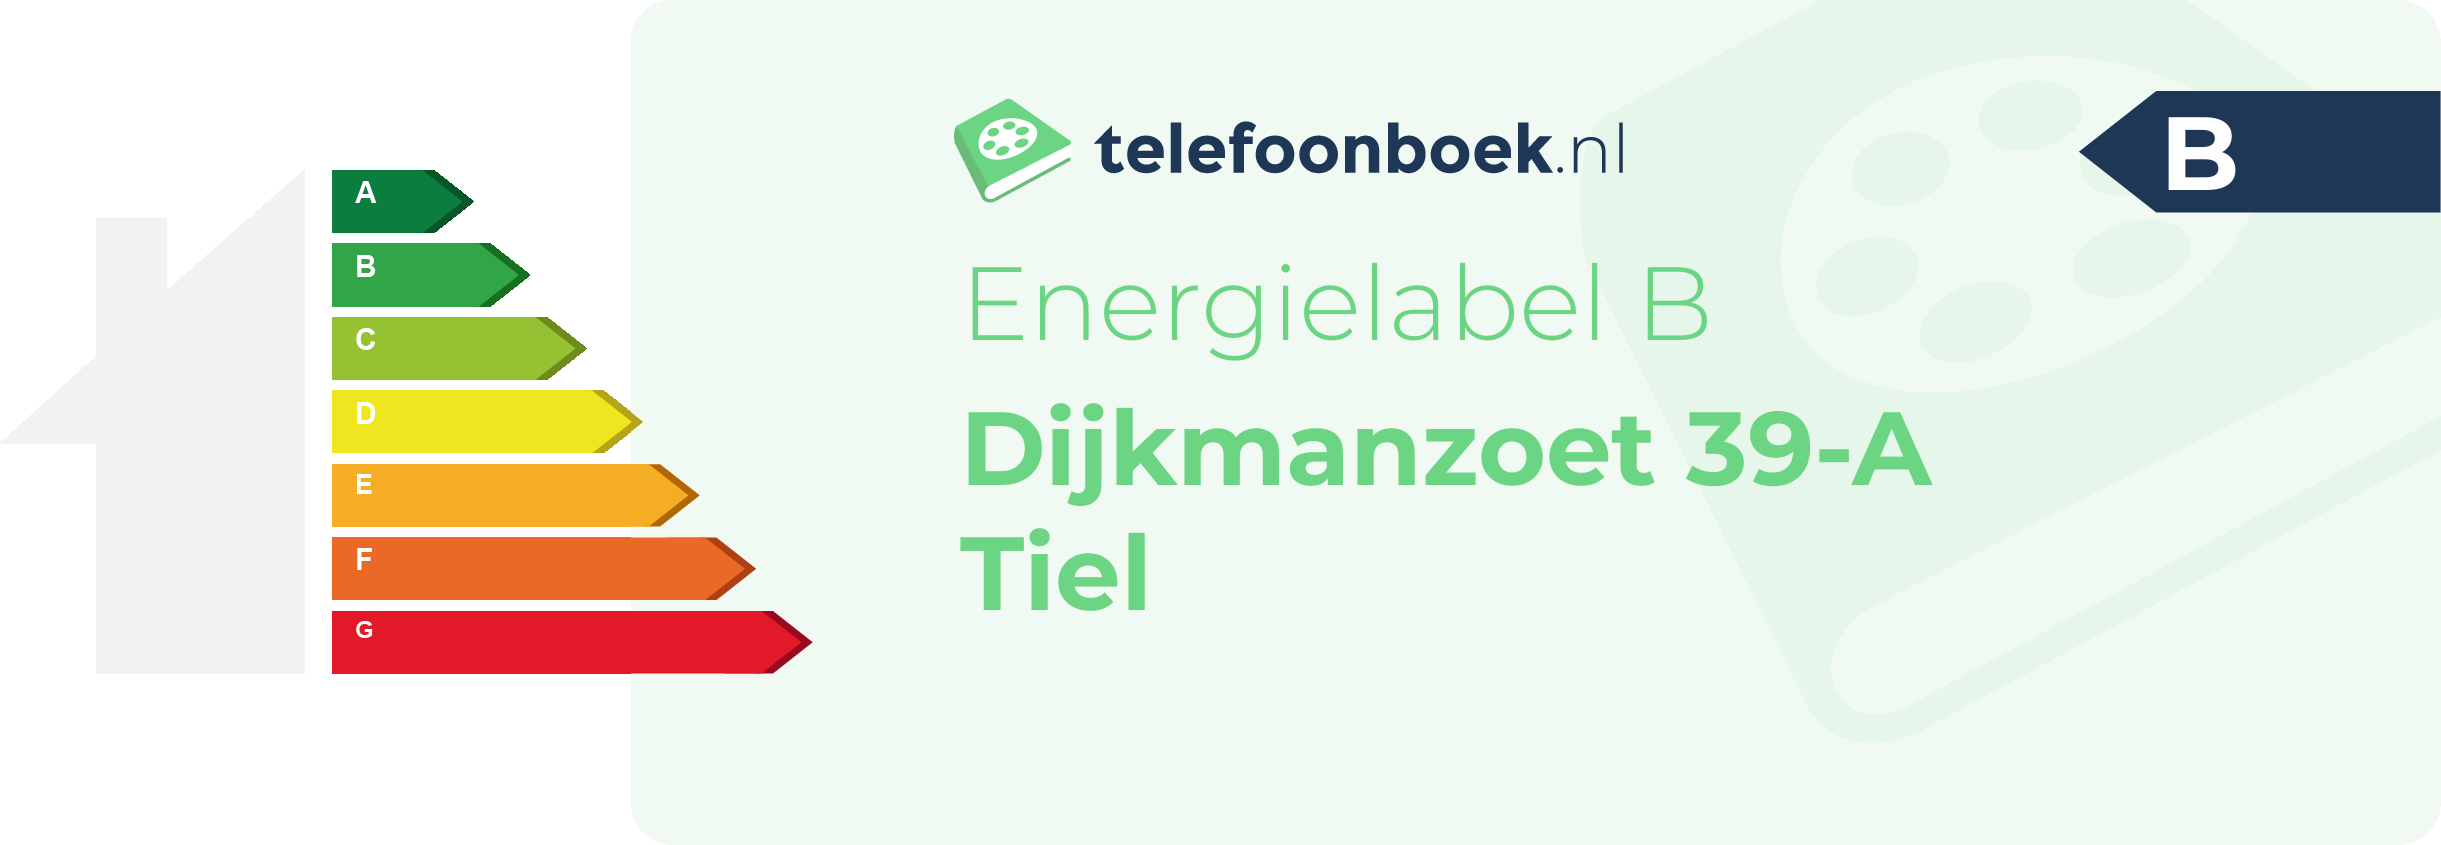 Energielabel Dijkmanzoet 39-A Tiel